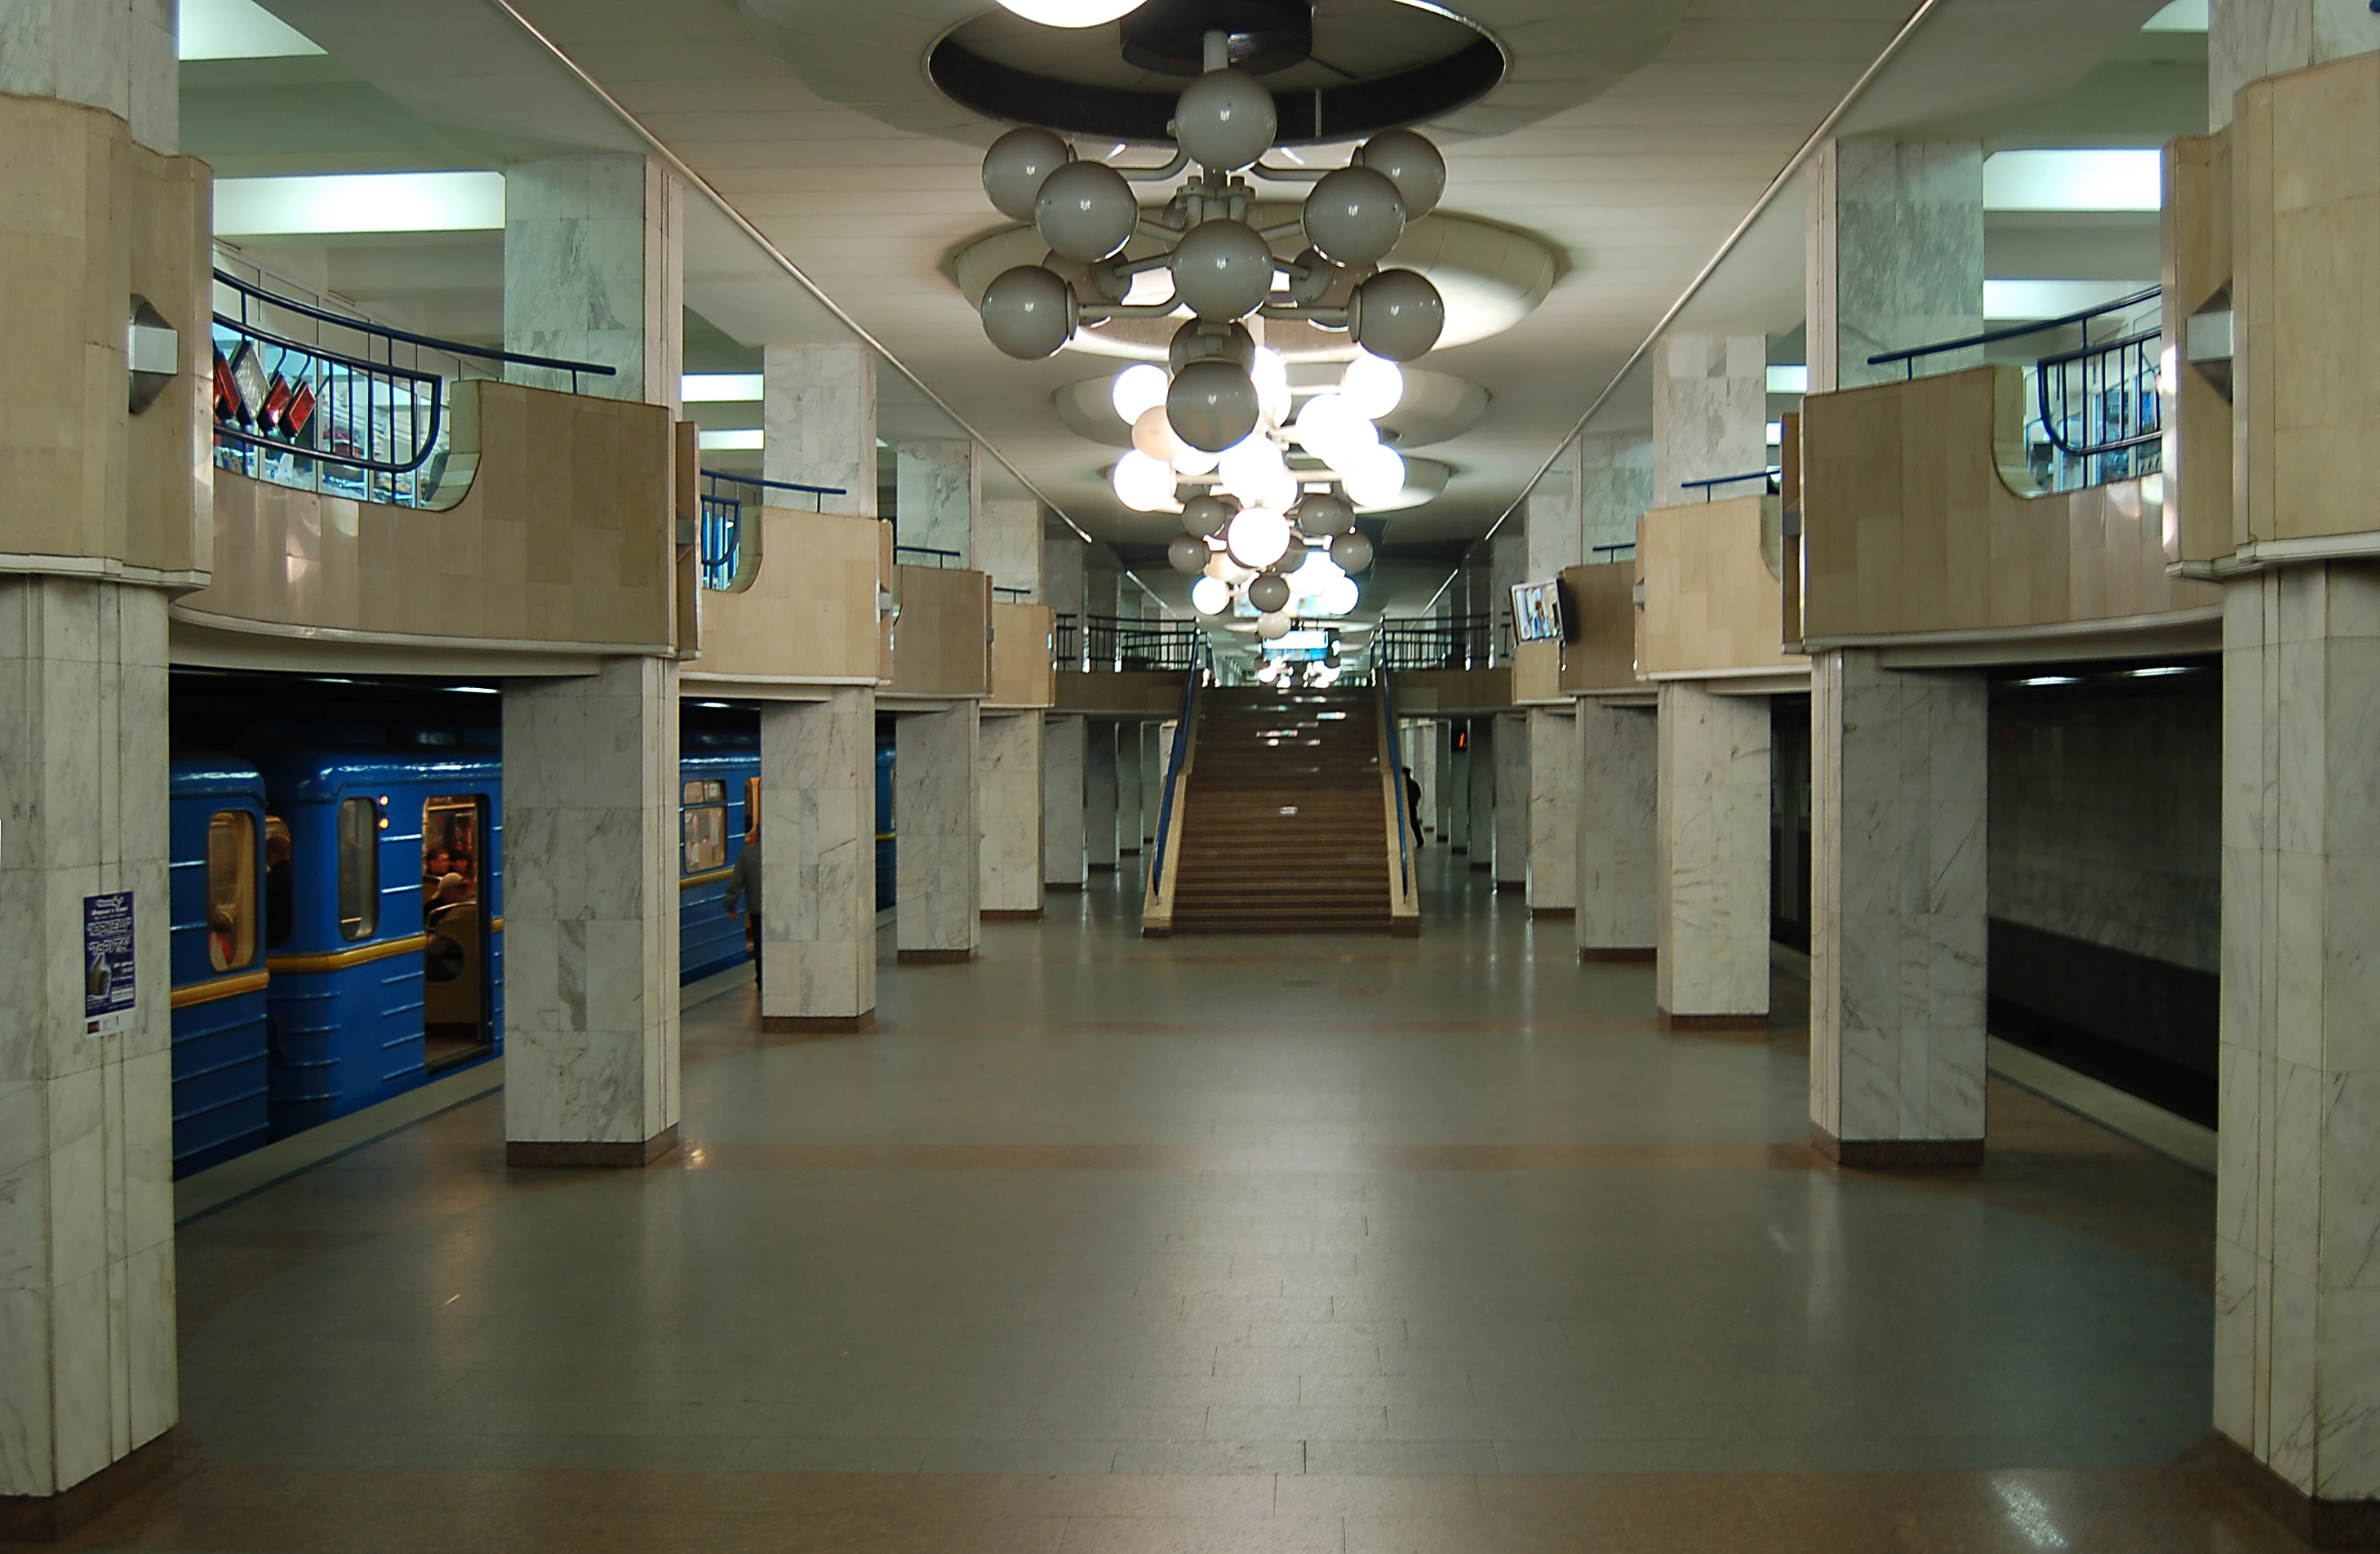 Новость - Транспорт и инфраструктура - Дождались: на станции метро "Академгородок", вместо эскалаторов, установят лифты